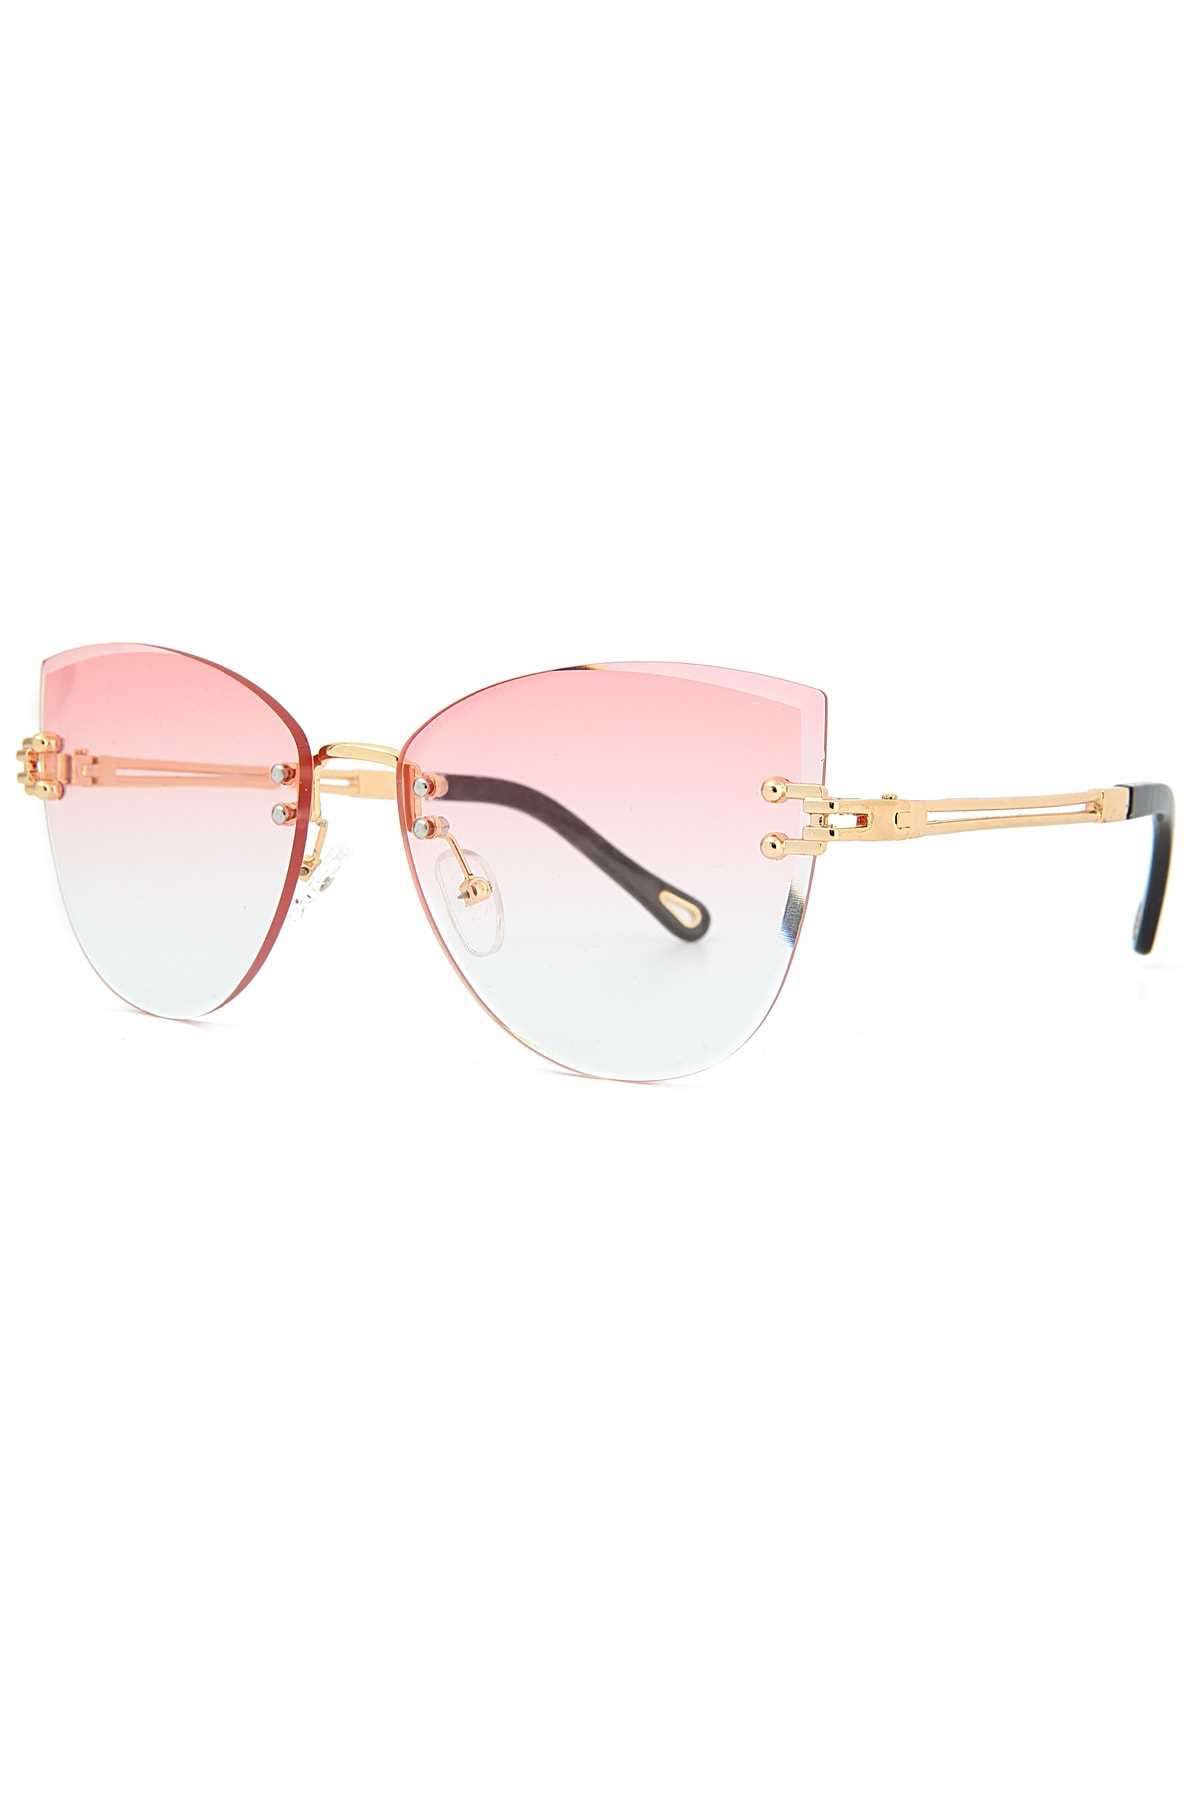 عینک آفتابی خاص زنانه برند Aqua Di Polo 1987 رنگ صورتی ty100417019